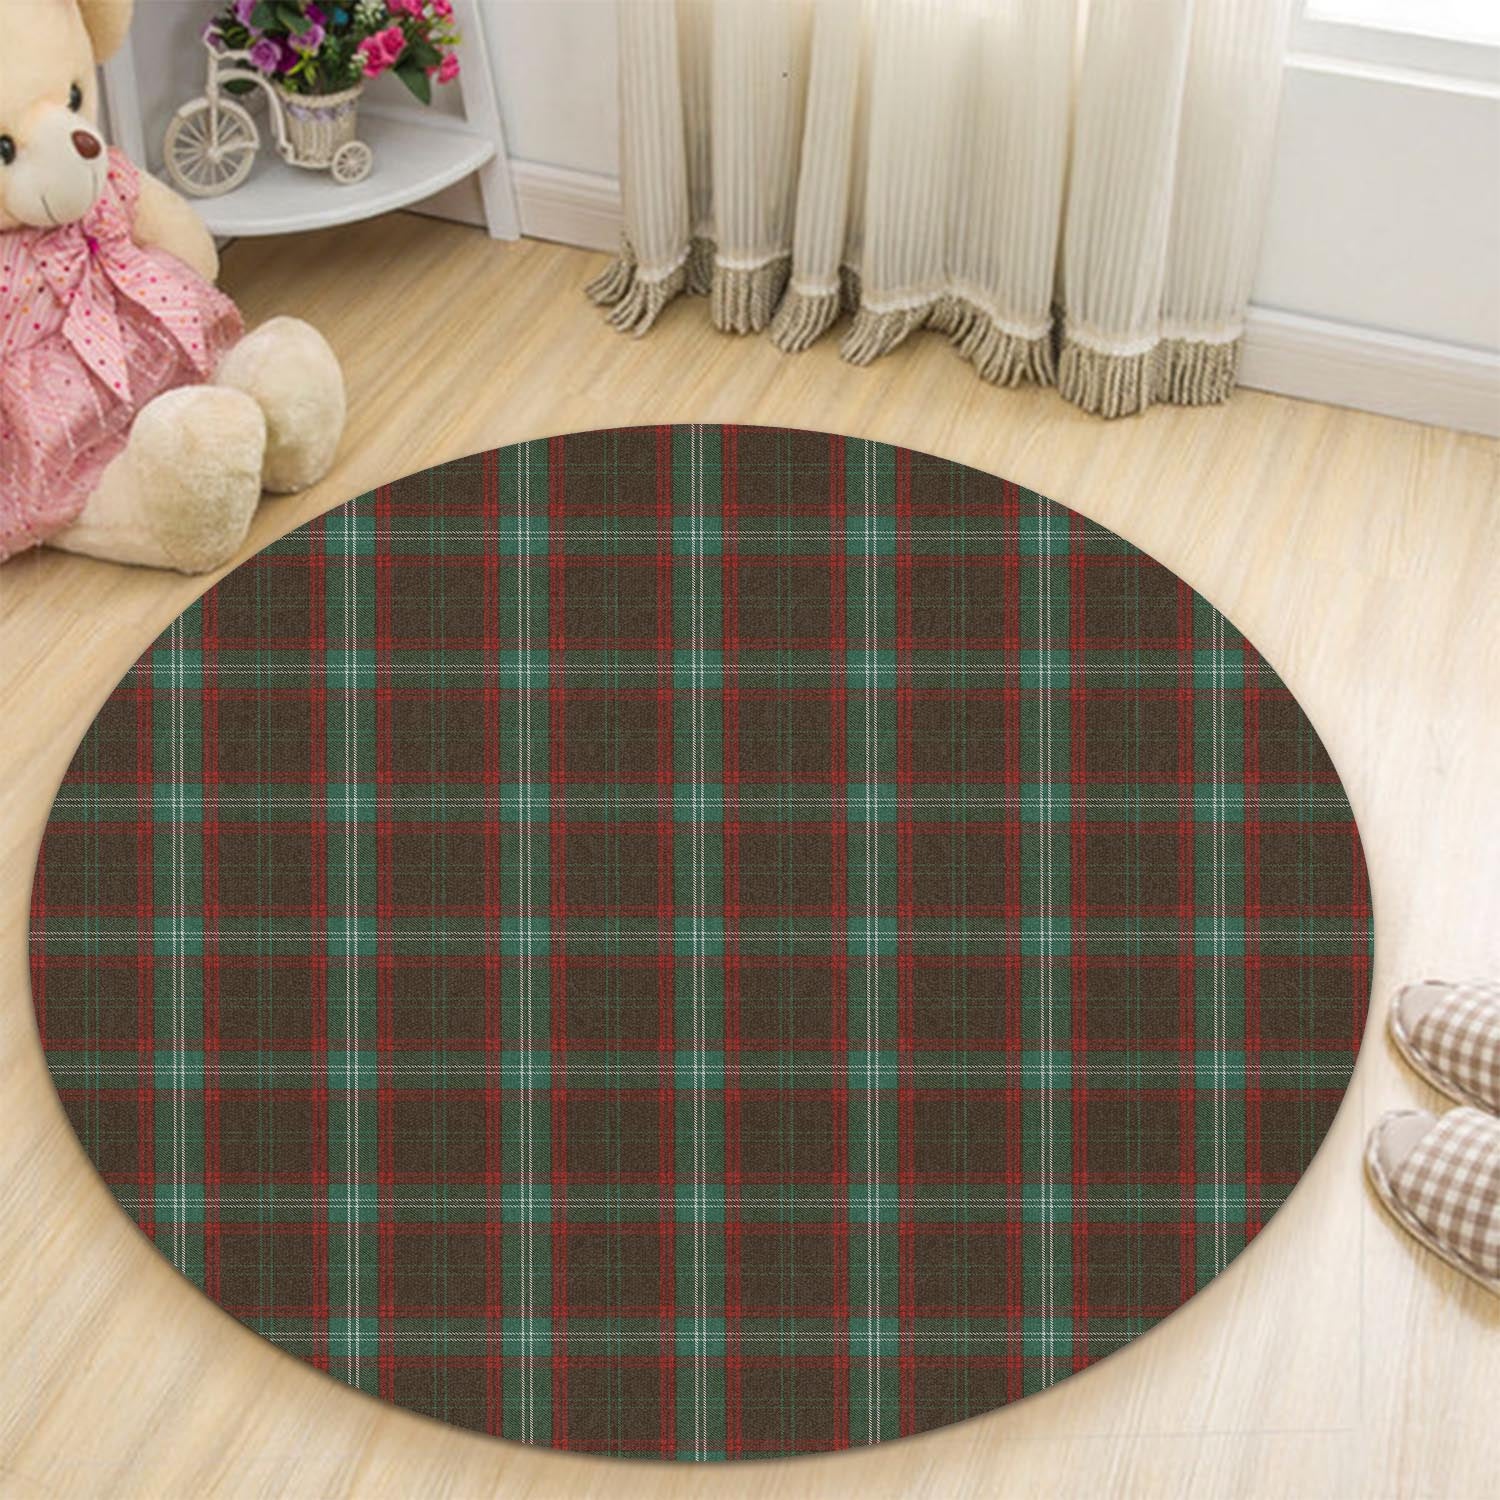 seton-hunting-tartan-round-rug